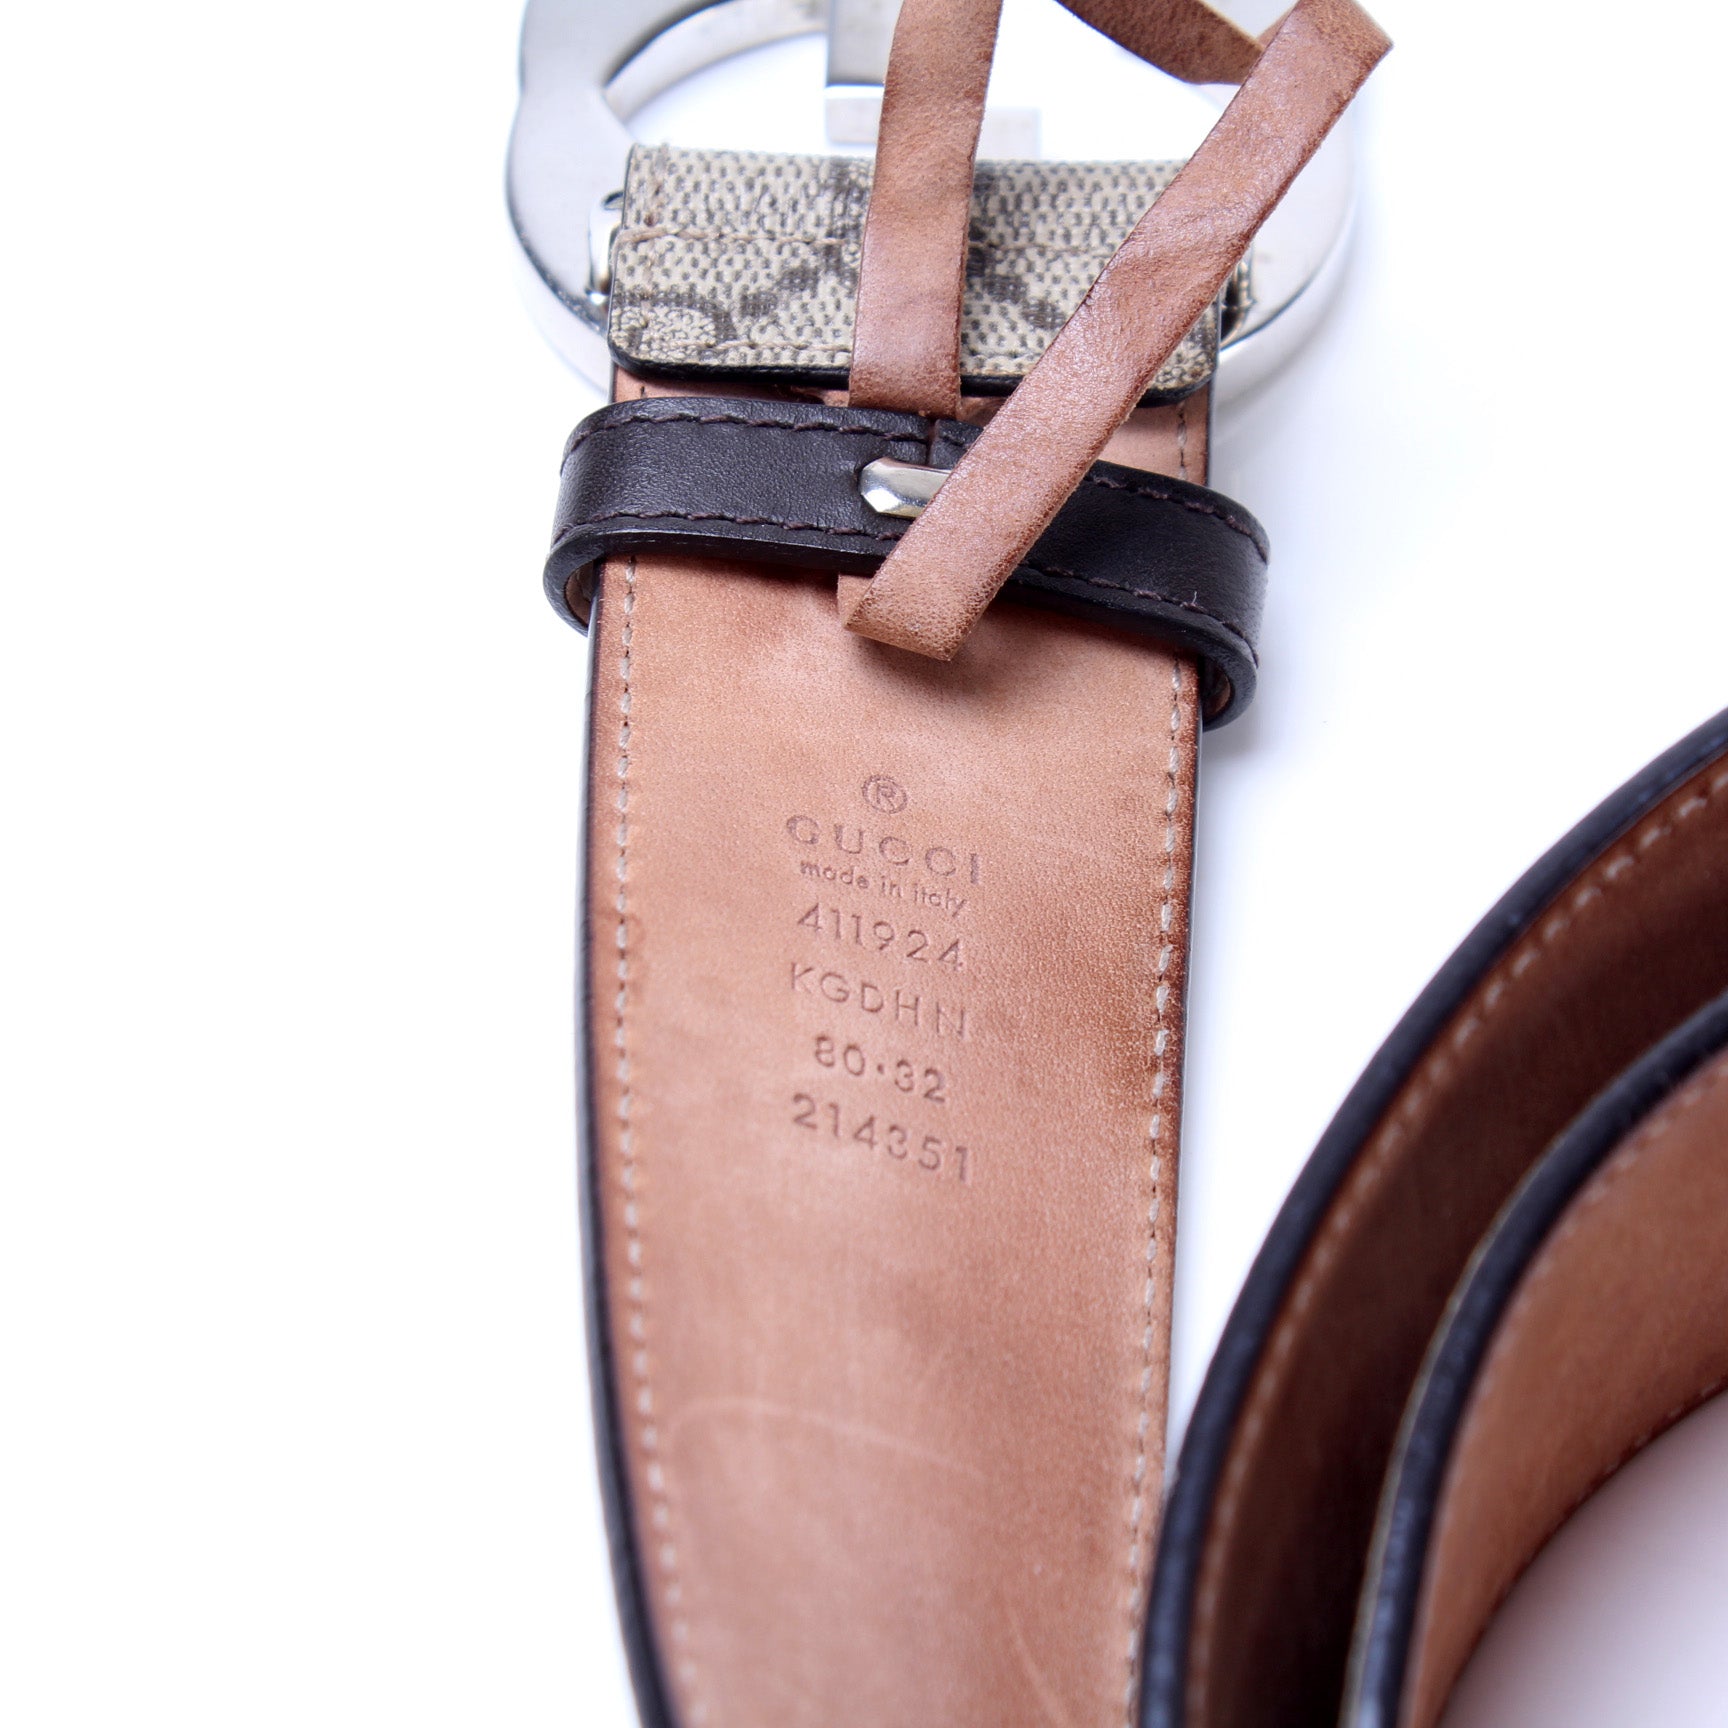 411924 GG Supreme Belt Size 100/40 – Keeks Designer Handbags